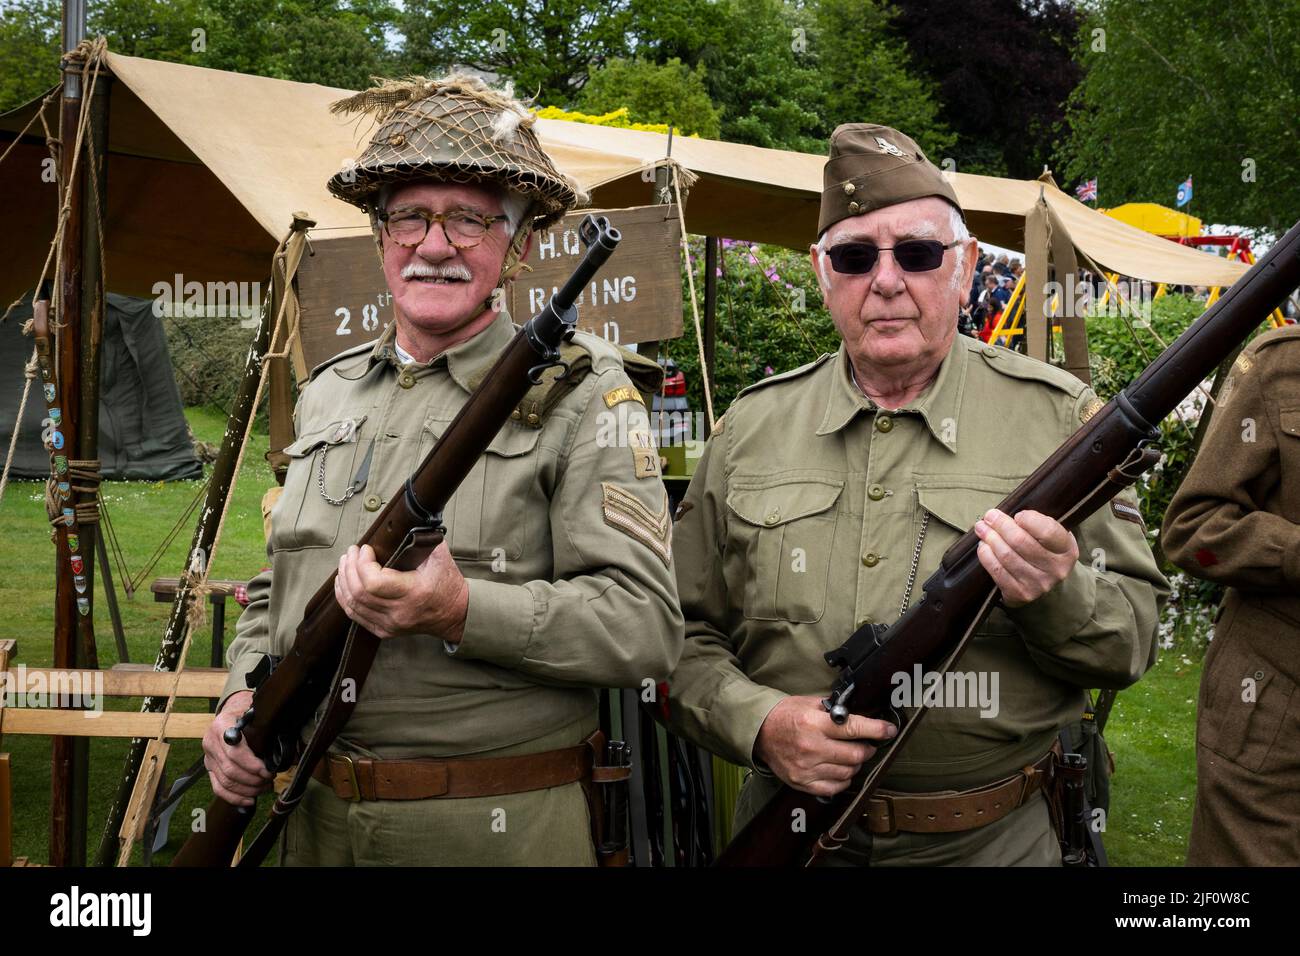 Haworth 1940's Living History Event (2 hombres en guardia, vestidos con traje de ejército de padre de WW2 khaki, campamento y tienda de campaña) - West Yorkshire, Inglaterra Reino Unido. Foto de stock